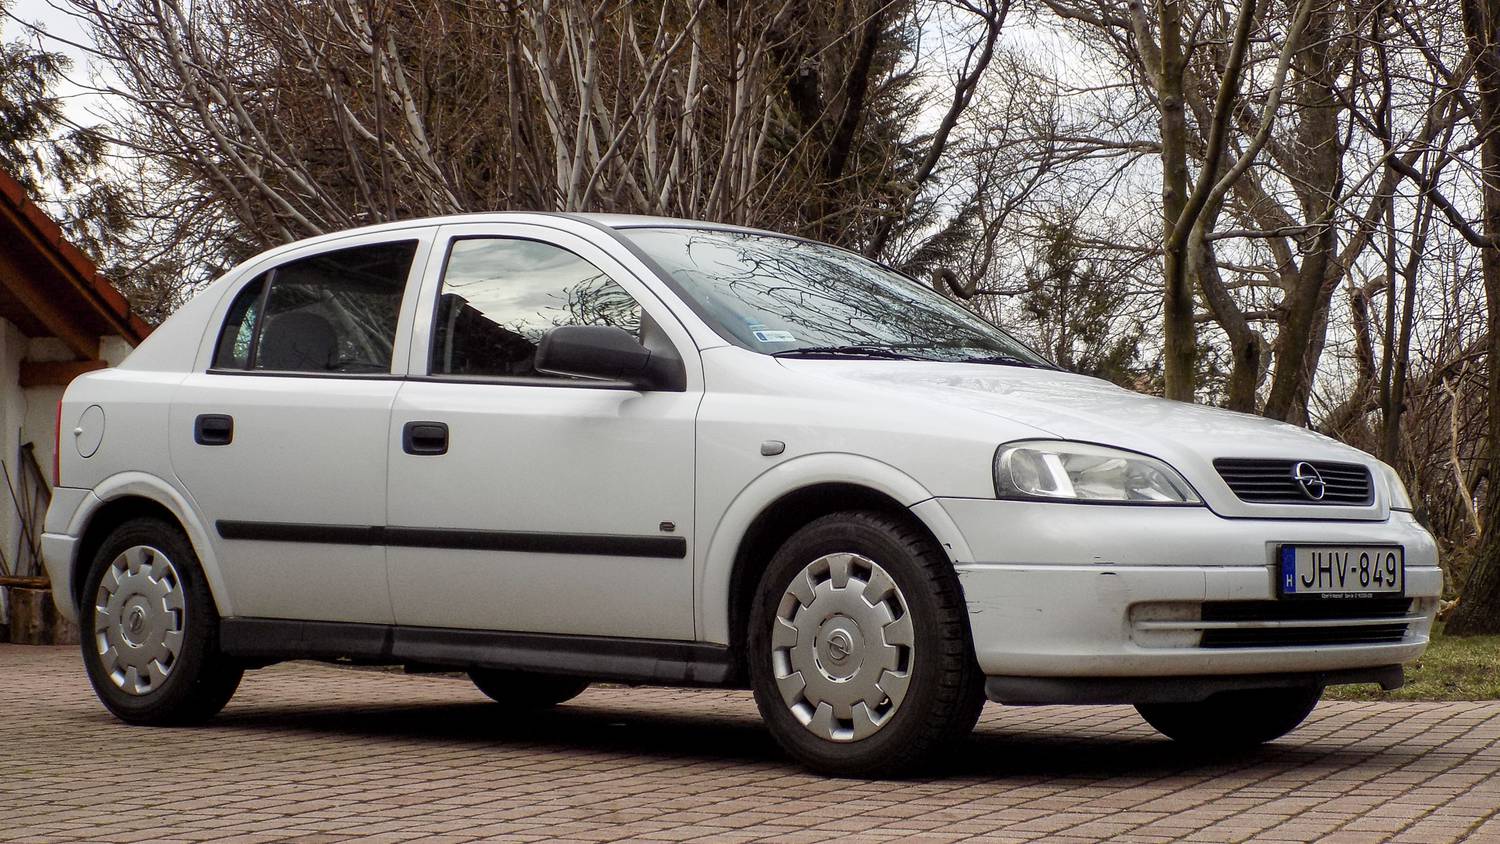 Totalcar - Tesztek - Használtteszt: Opel Astra G 1.4 Twinport – 2005.